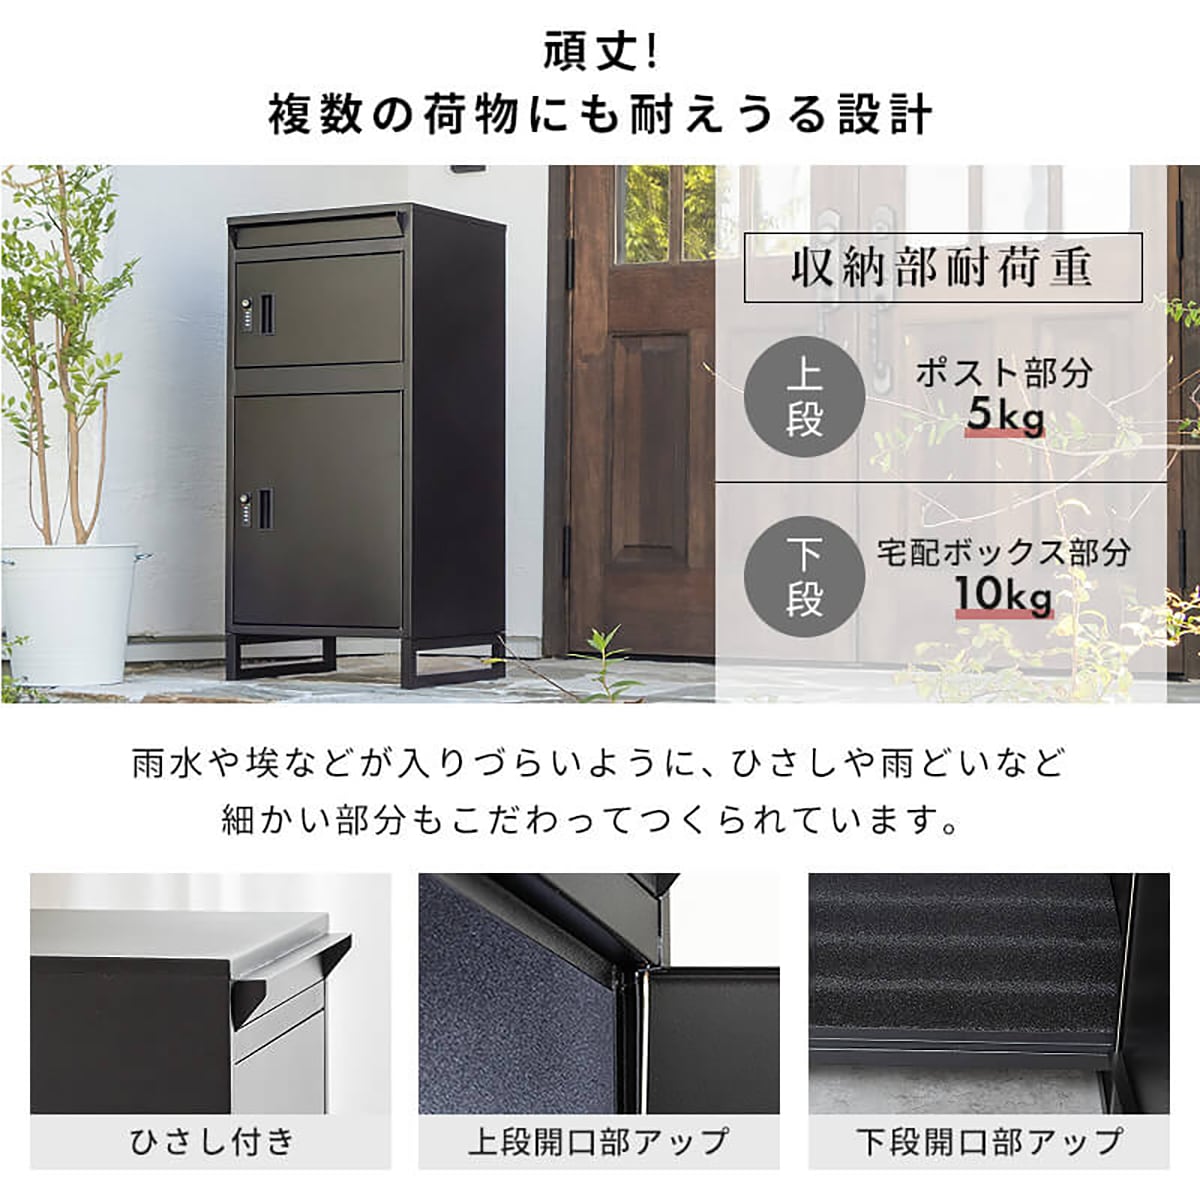 ポスト付き宅配ボックス(DLM)通販 ニトリネット【公式】 家具・インテリア通販